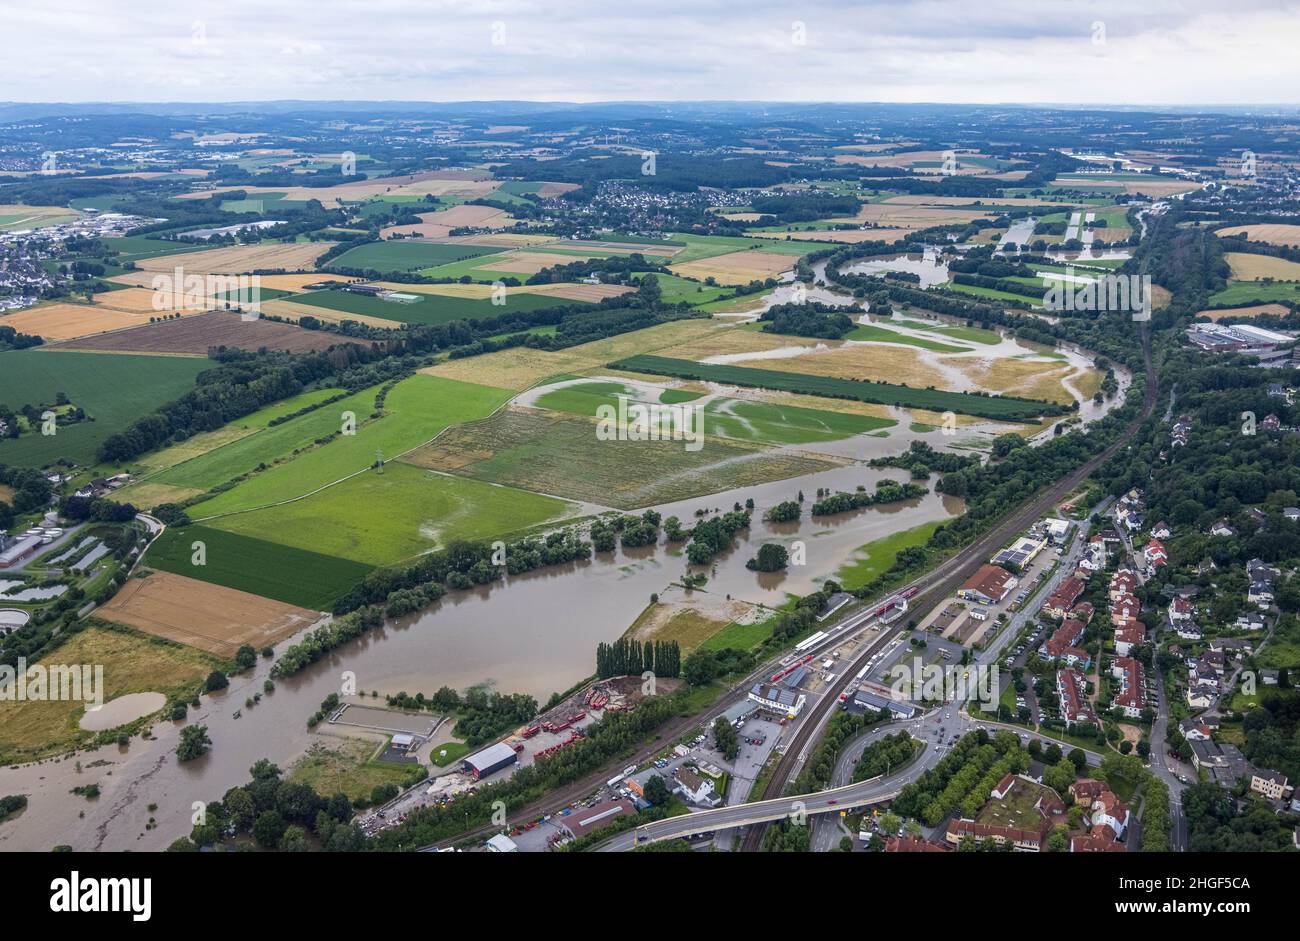 Vista aerea, alluvione della Ruhr, Fröndenberg, Fröndenberg/Ruhr, area della Ruhr, Renania settentrionale-Vestfalia, Germania, DE, Europa, vista degli uccelli, fotografia aerea, a Foto Stock